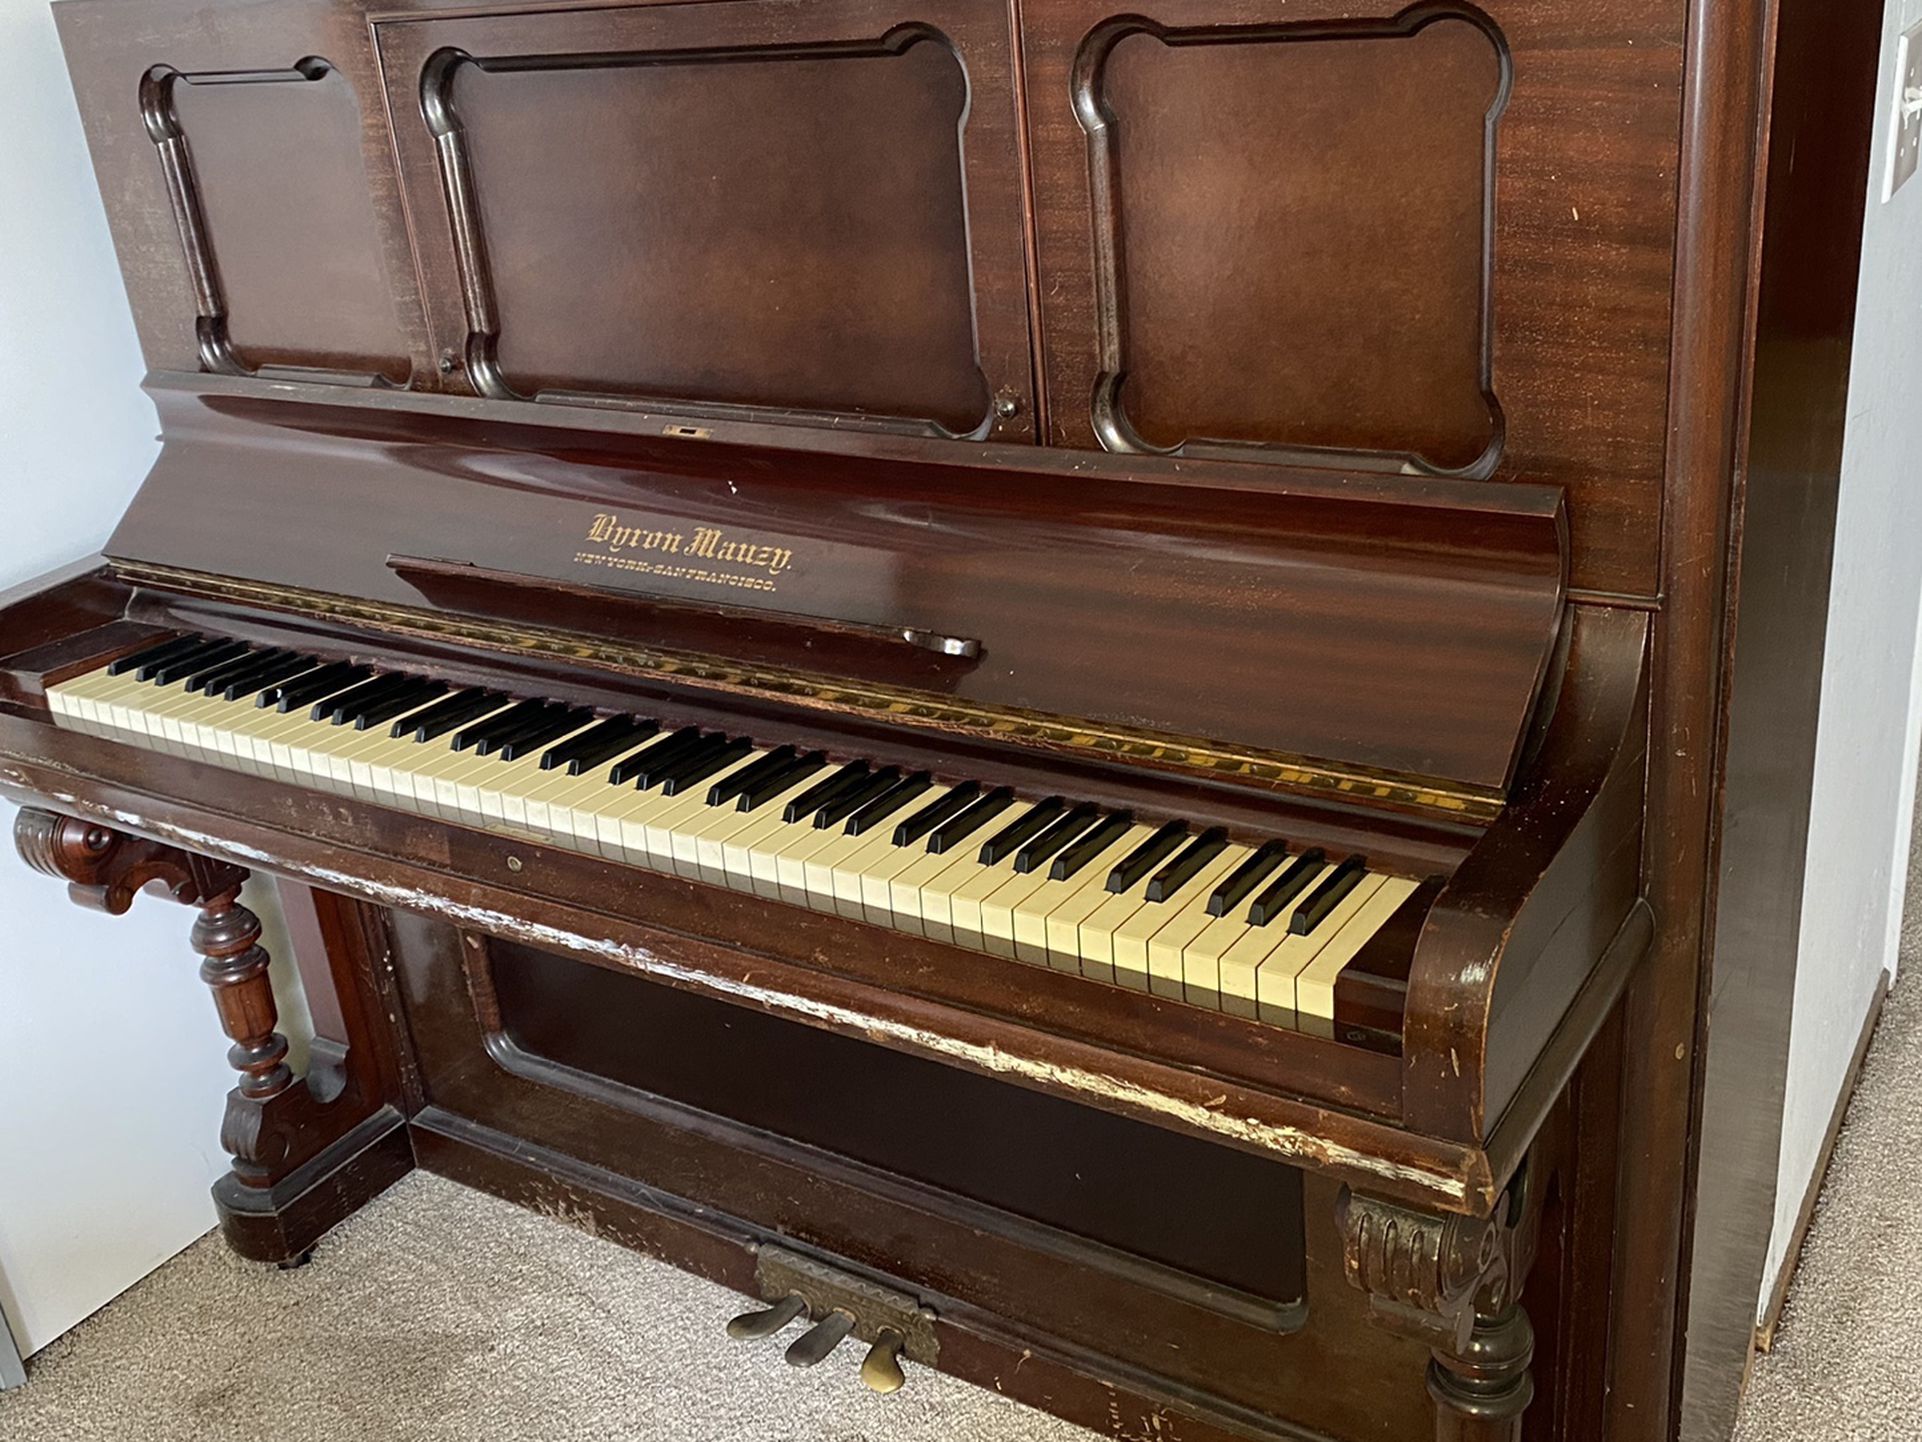 Byron Mauzy Antique Piano